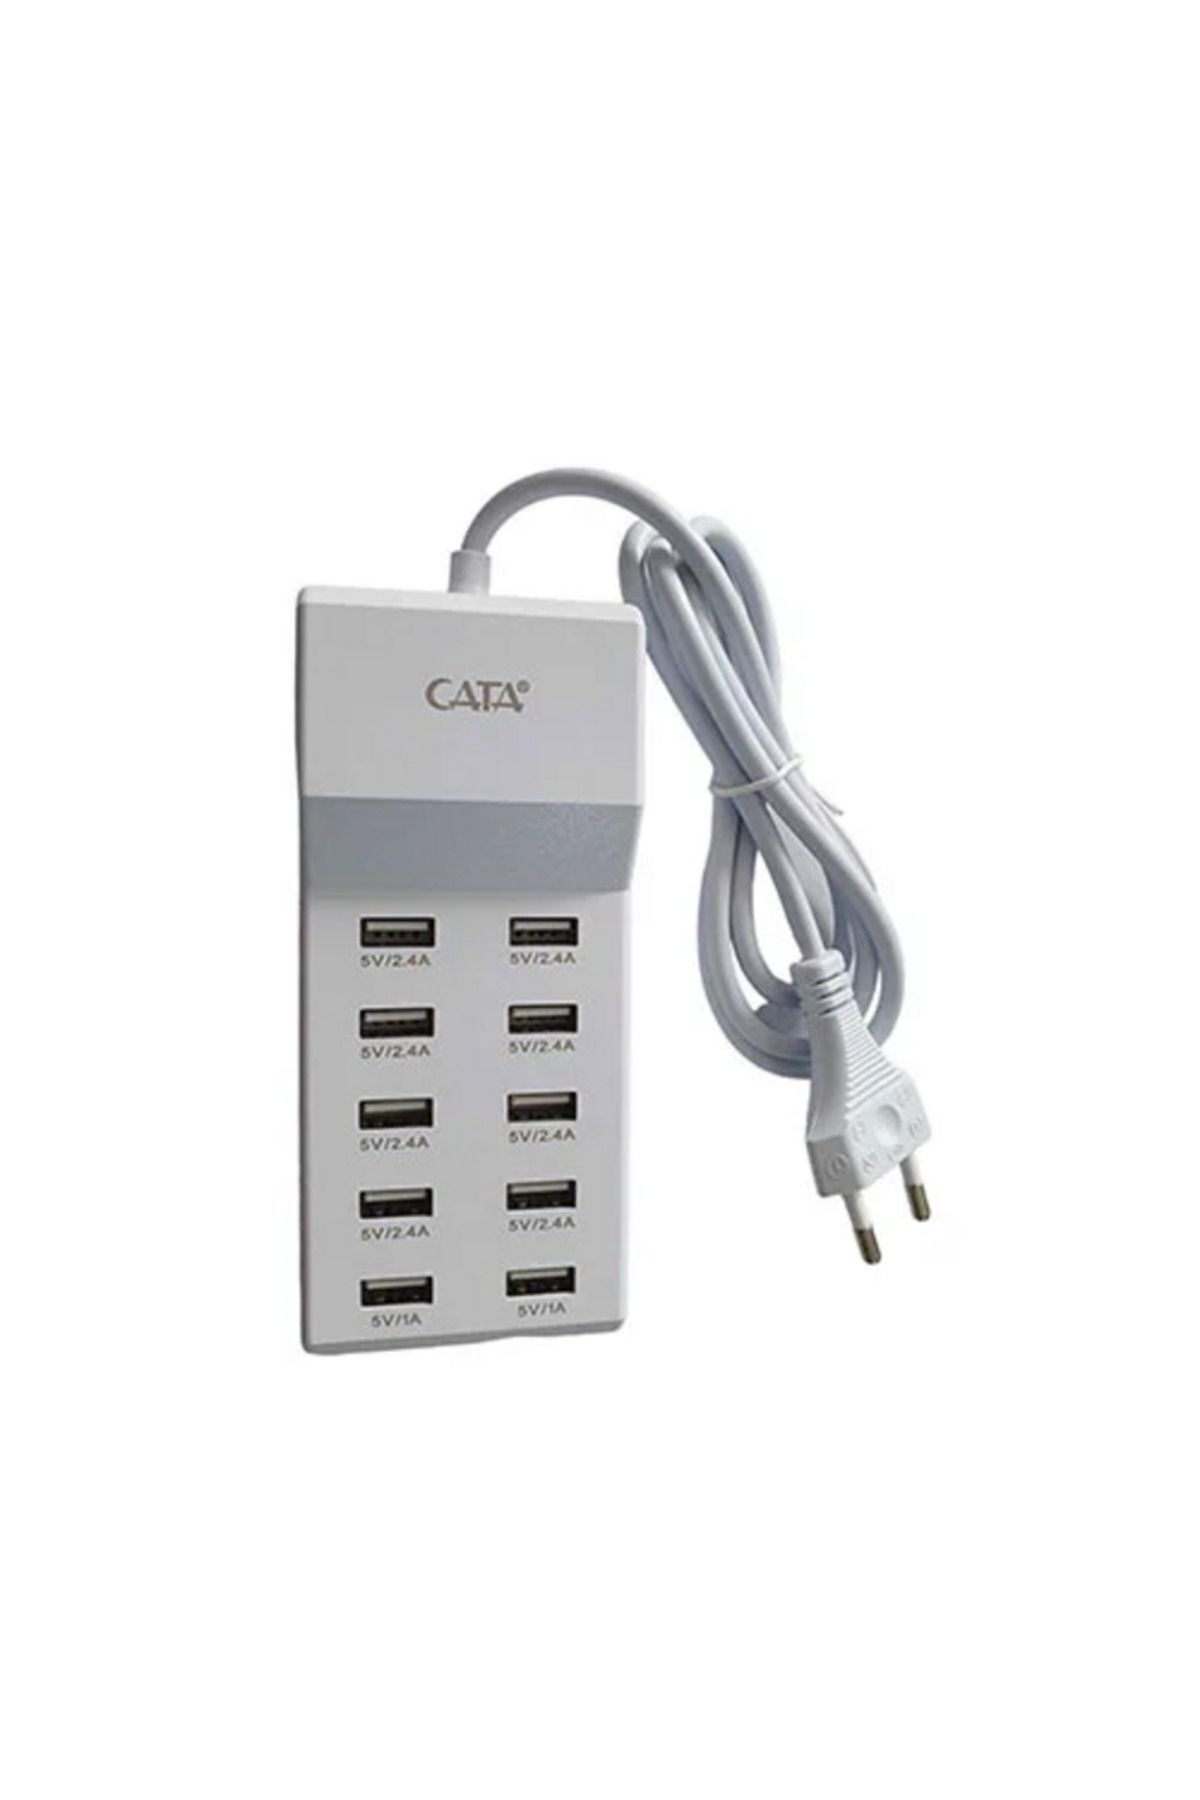 Cata USB Şarj Cihazı 10'lu CT-2554